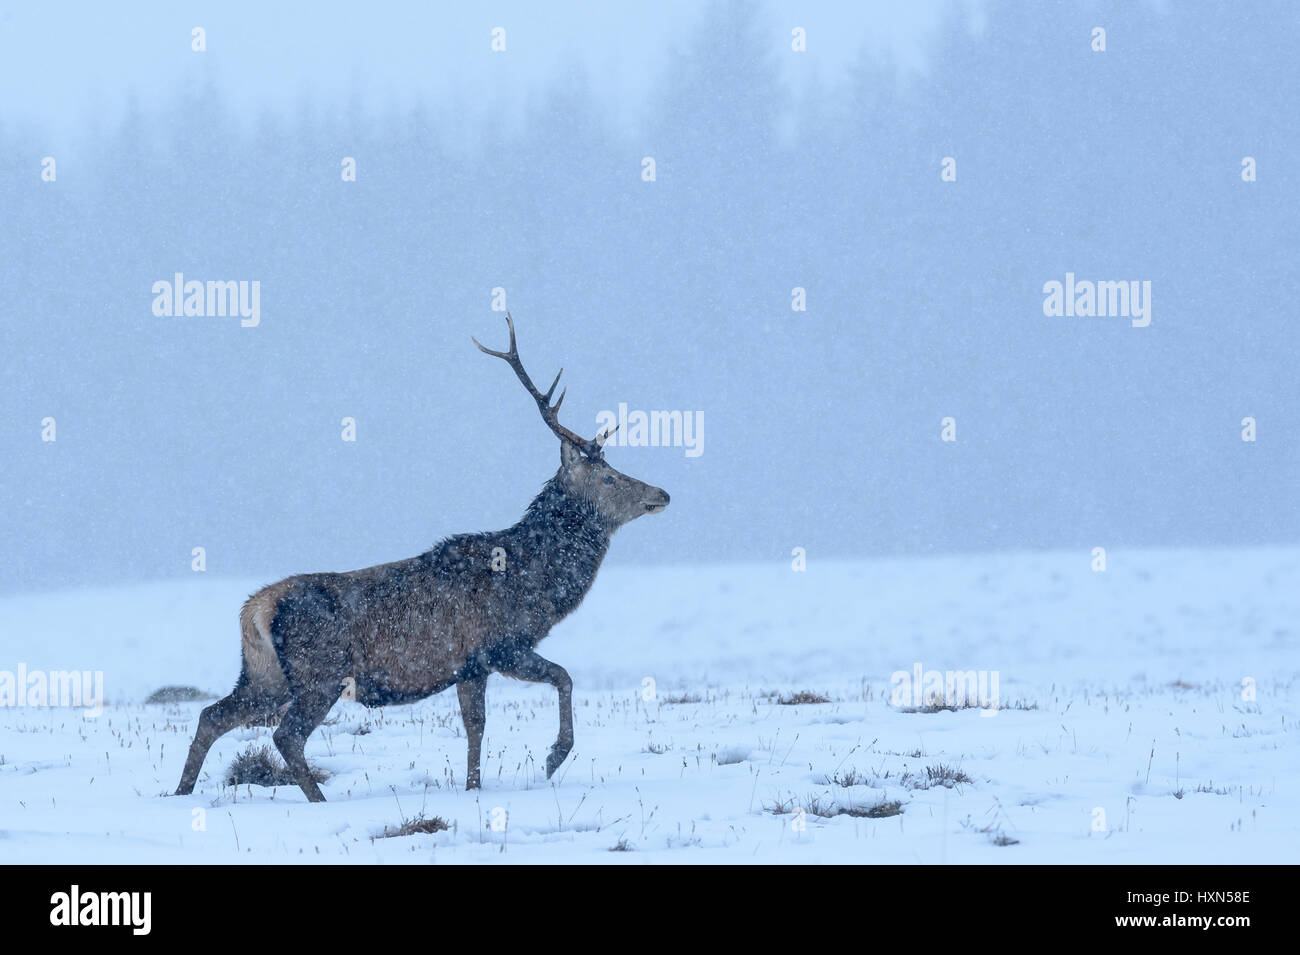 Il cervo (Cervus elephas) feste di addio al celibato in inverno la neve doccia. Cairngorms National Park, Scozia. Febbraio. Foto Stock